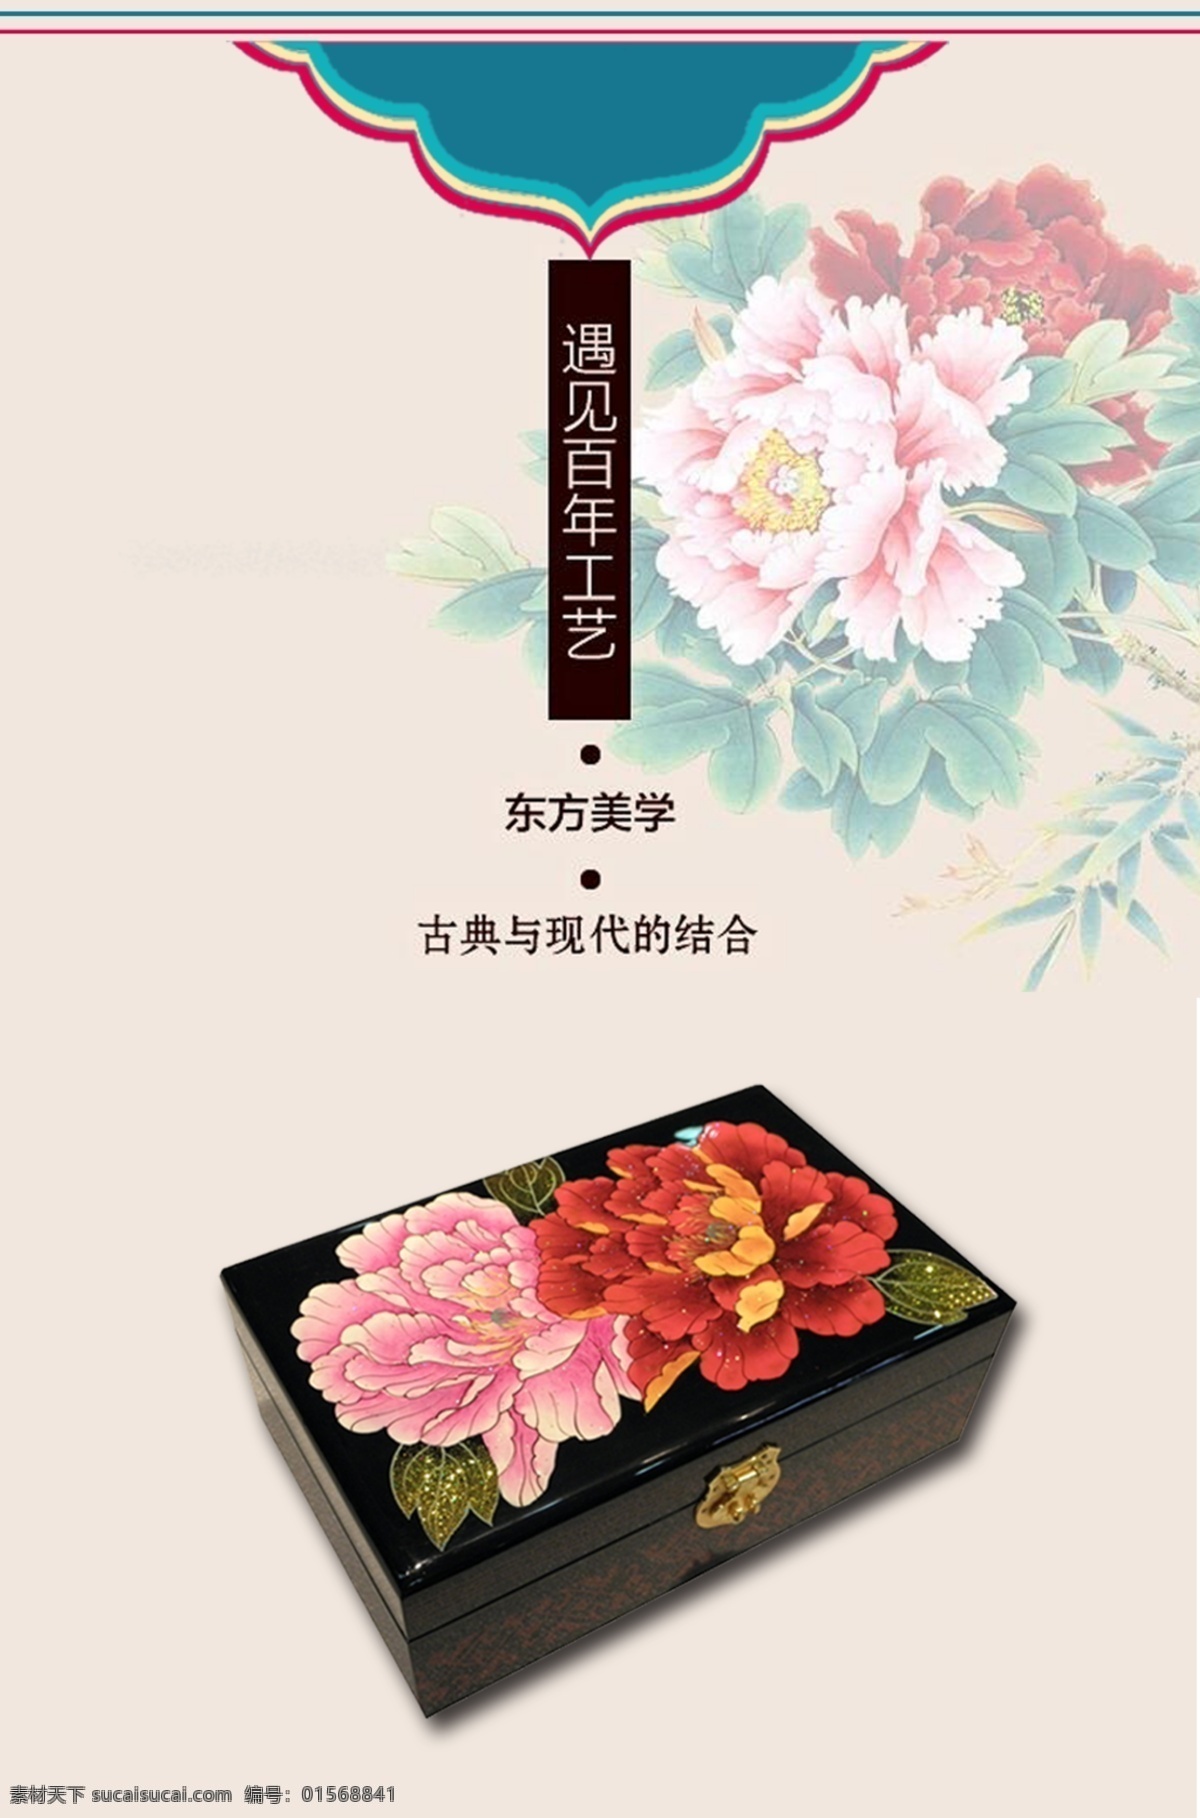 古典牡丹背景 古典素材 牡丹背景 漆器首饰盒 中国风素材